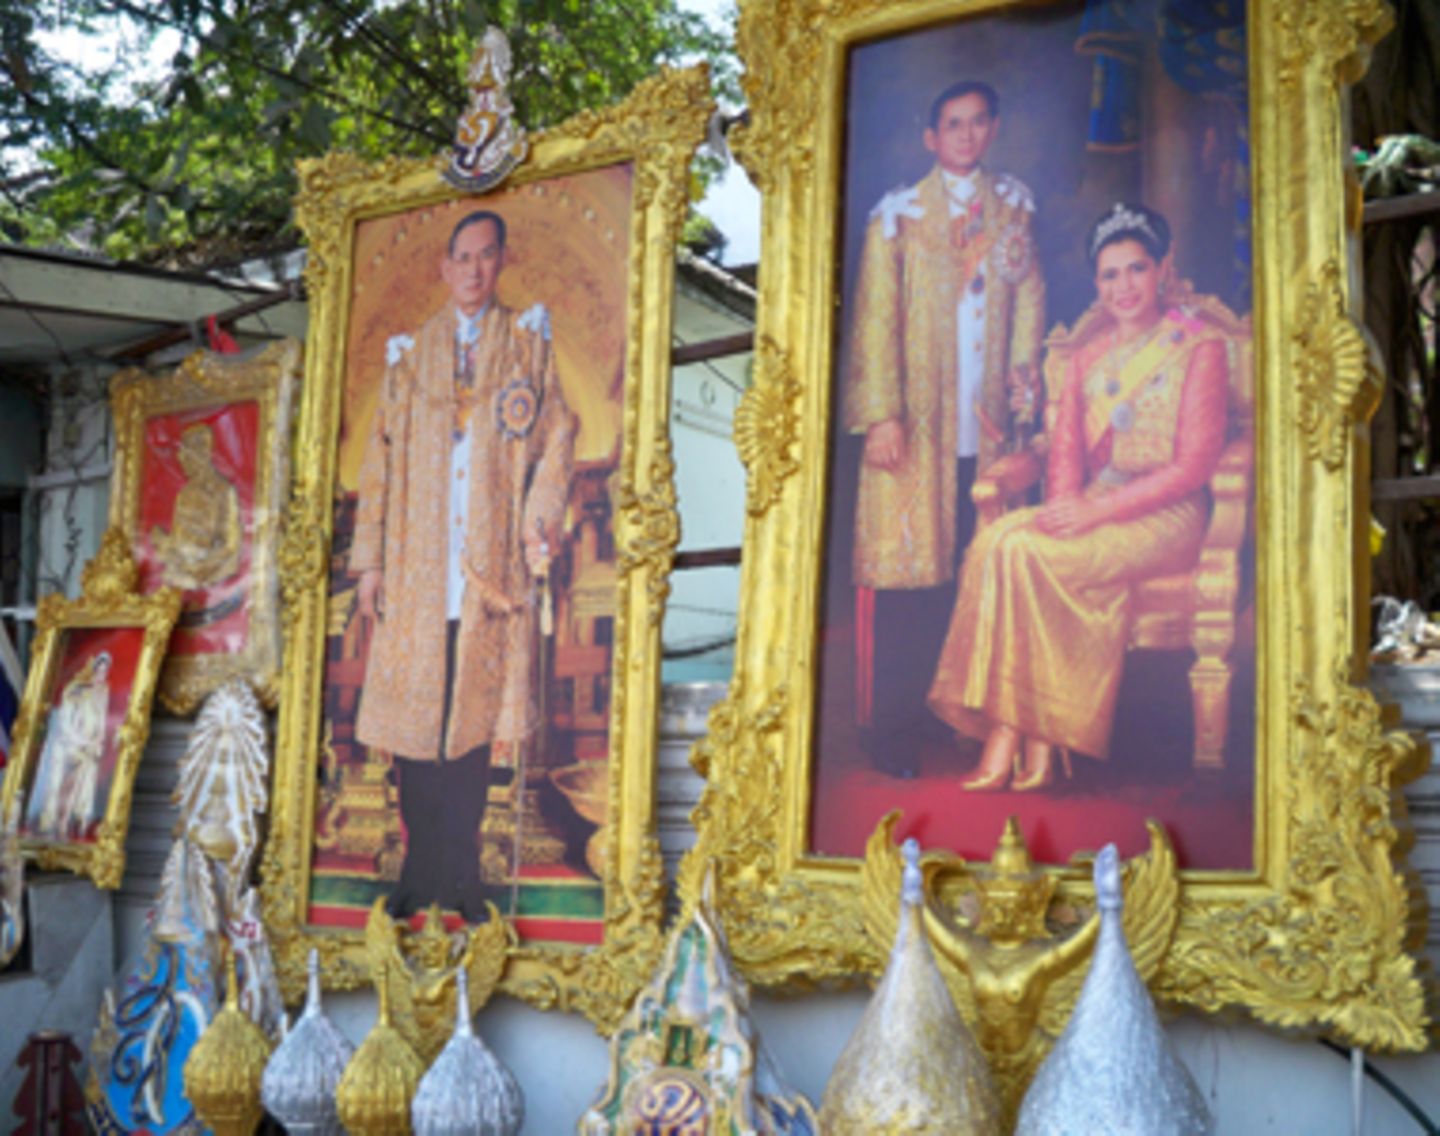 König Bhumibol und seine Frau Sirikit sind die thailändischen Nationalhelden. An jeder Ecke finden sich Bilder der beiden. Natürlich immer in üppigen goldenen Rahmen mit ordentlich Schischi.